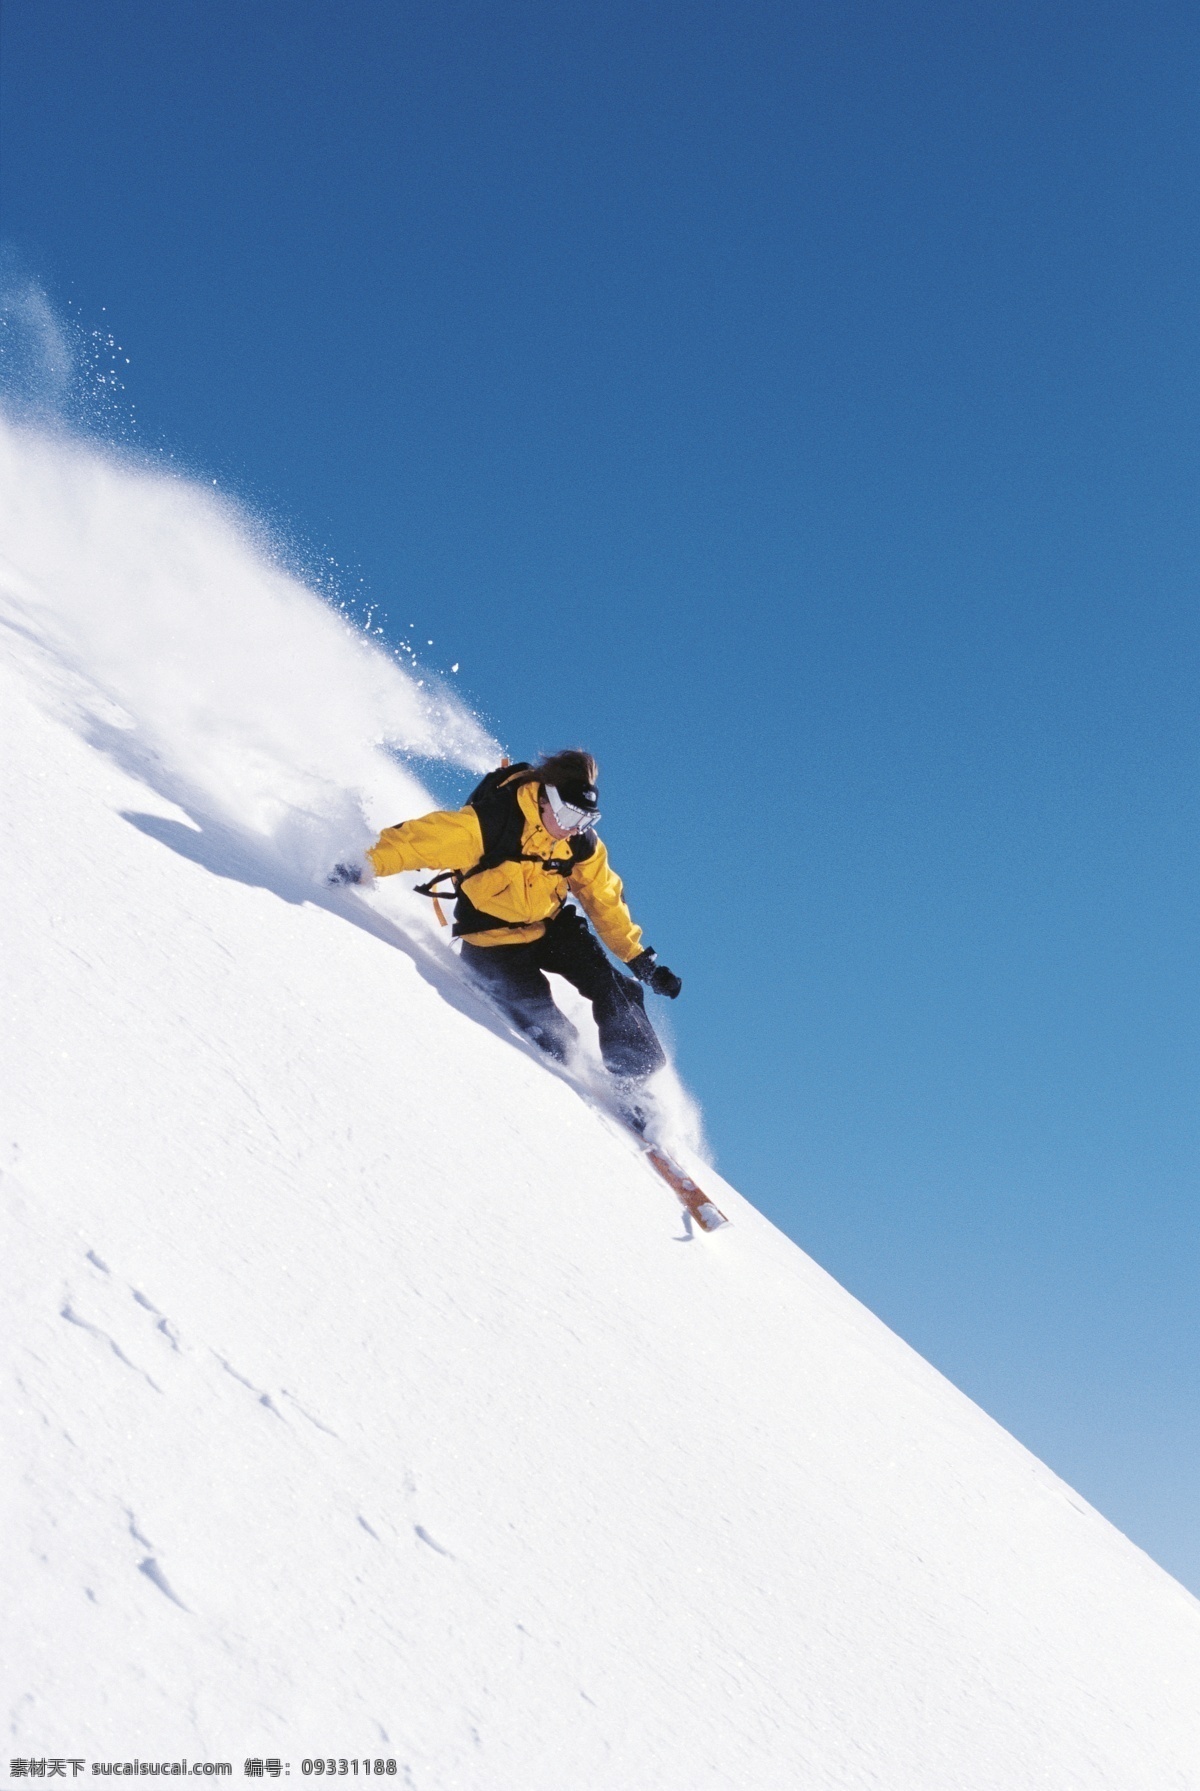 急速 下滑 运动员 雪地运动 划雪运动 极限运动 体育项目 速度 运动图片 生活百科 雪山 风景 摄影图片 高清图片 体育运动